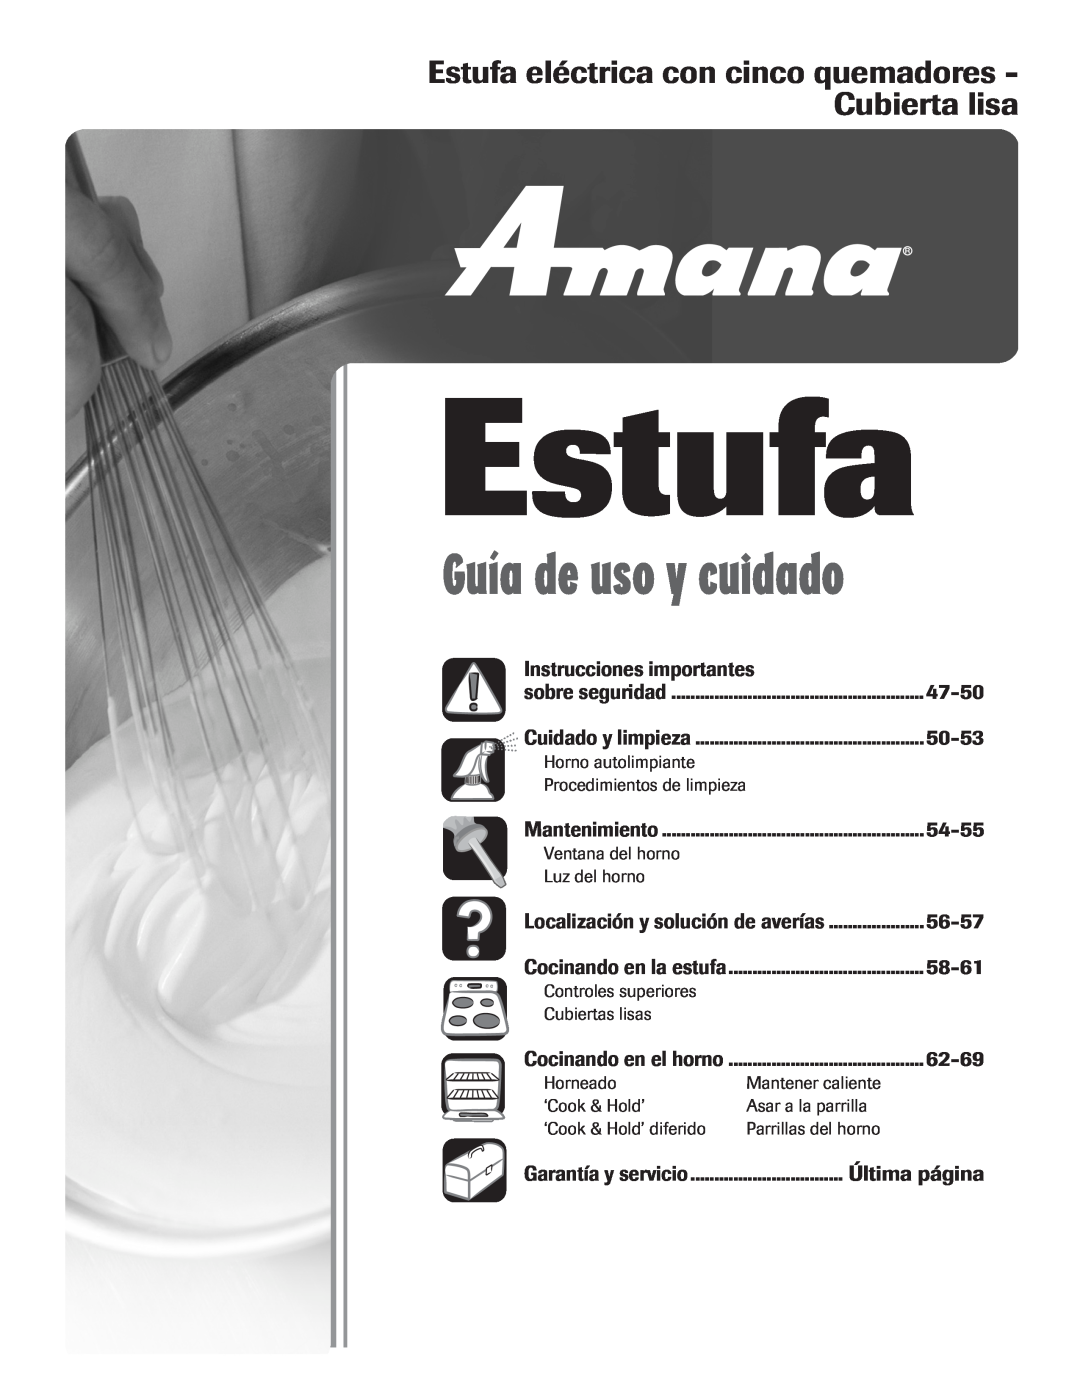 Amana Electric Smoothtop Range Estufa, Instrucciones importantes, 47-50, 50-53, 54-55, 56-57, 58-61, 62-69, Última página 